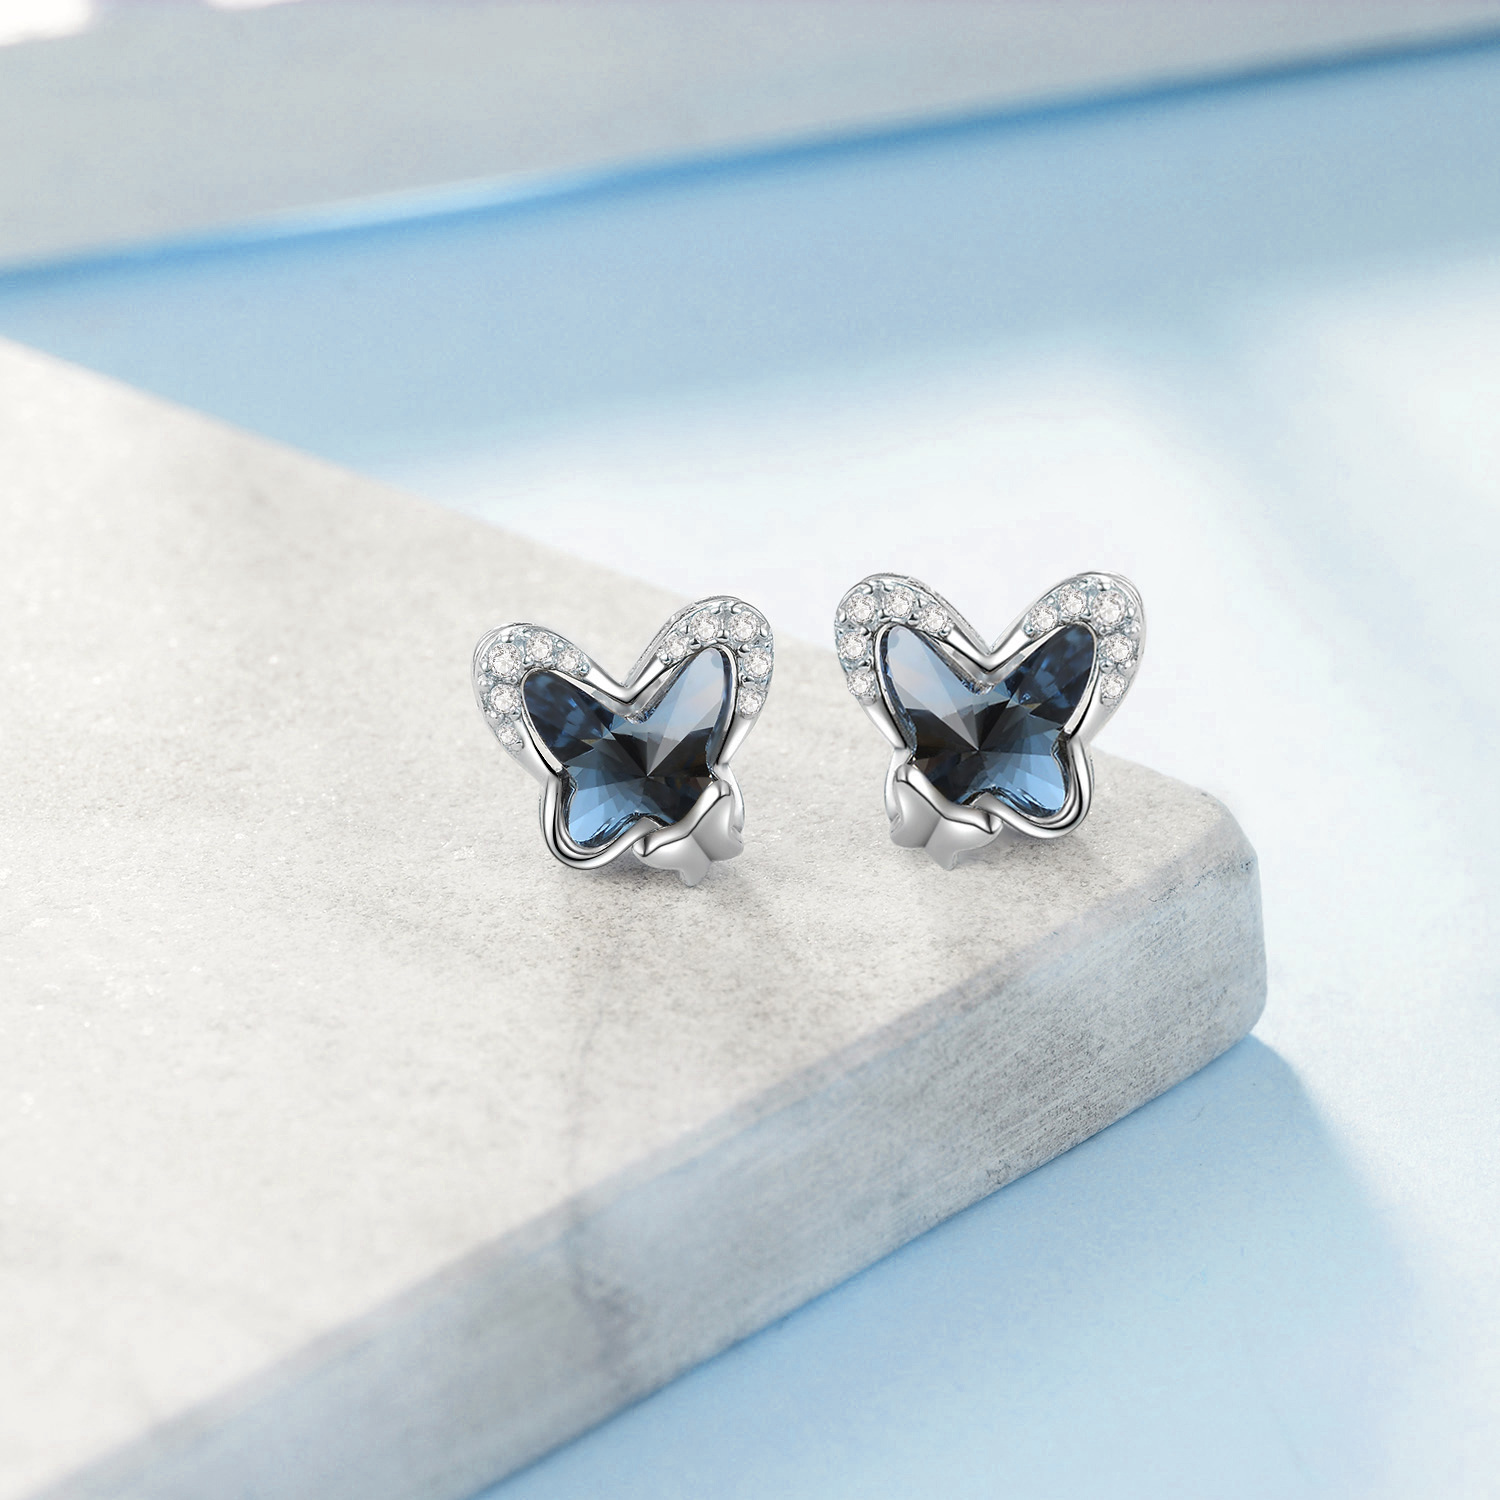 e7fbeabe3710785fda1f37850648ea49PYE03582 - 925 Sterling Silver Butterfly Stud Earrings Hypoallergenic Earring Fine Jewelry Gift for Women Girls